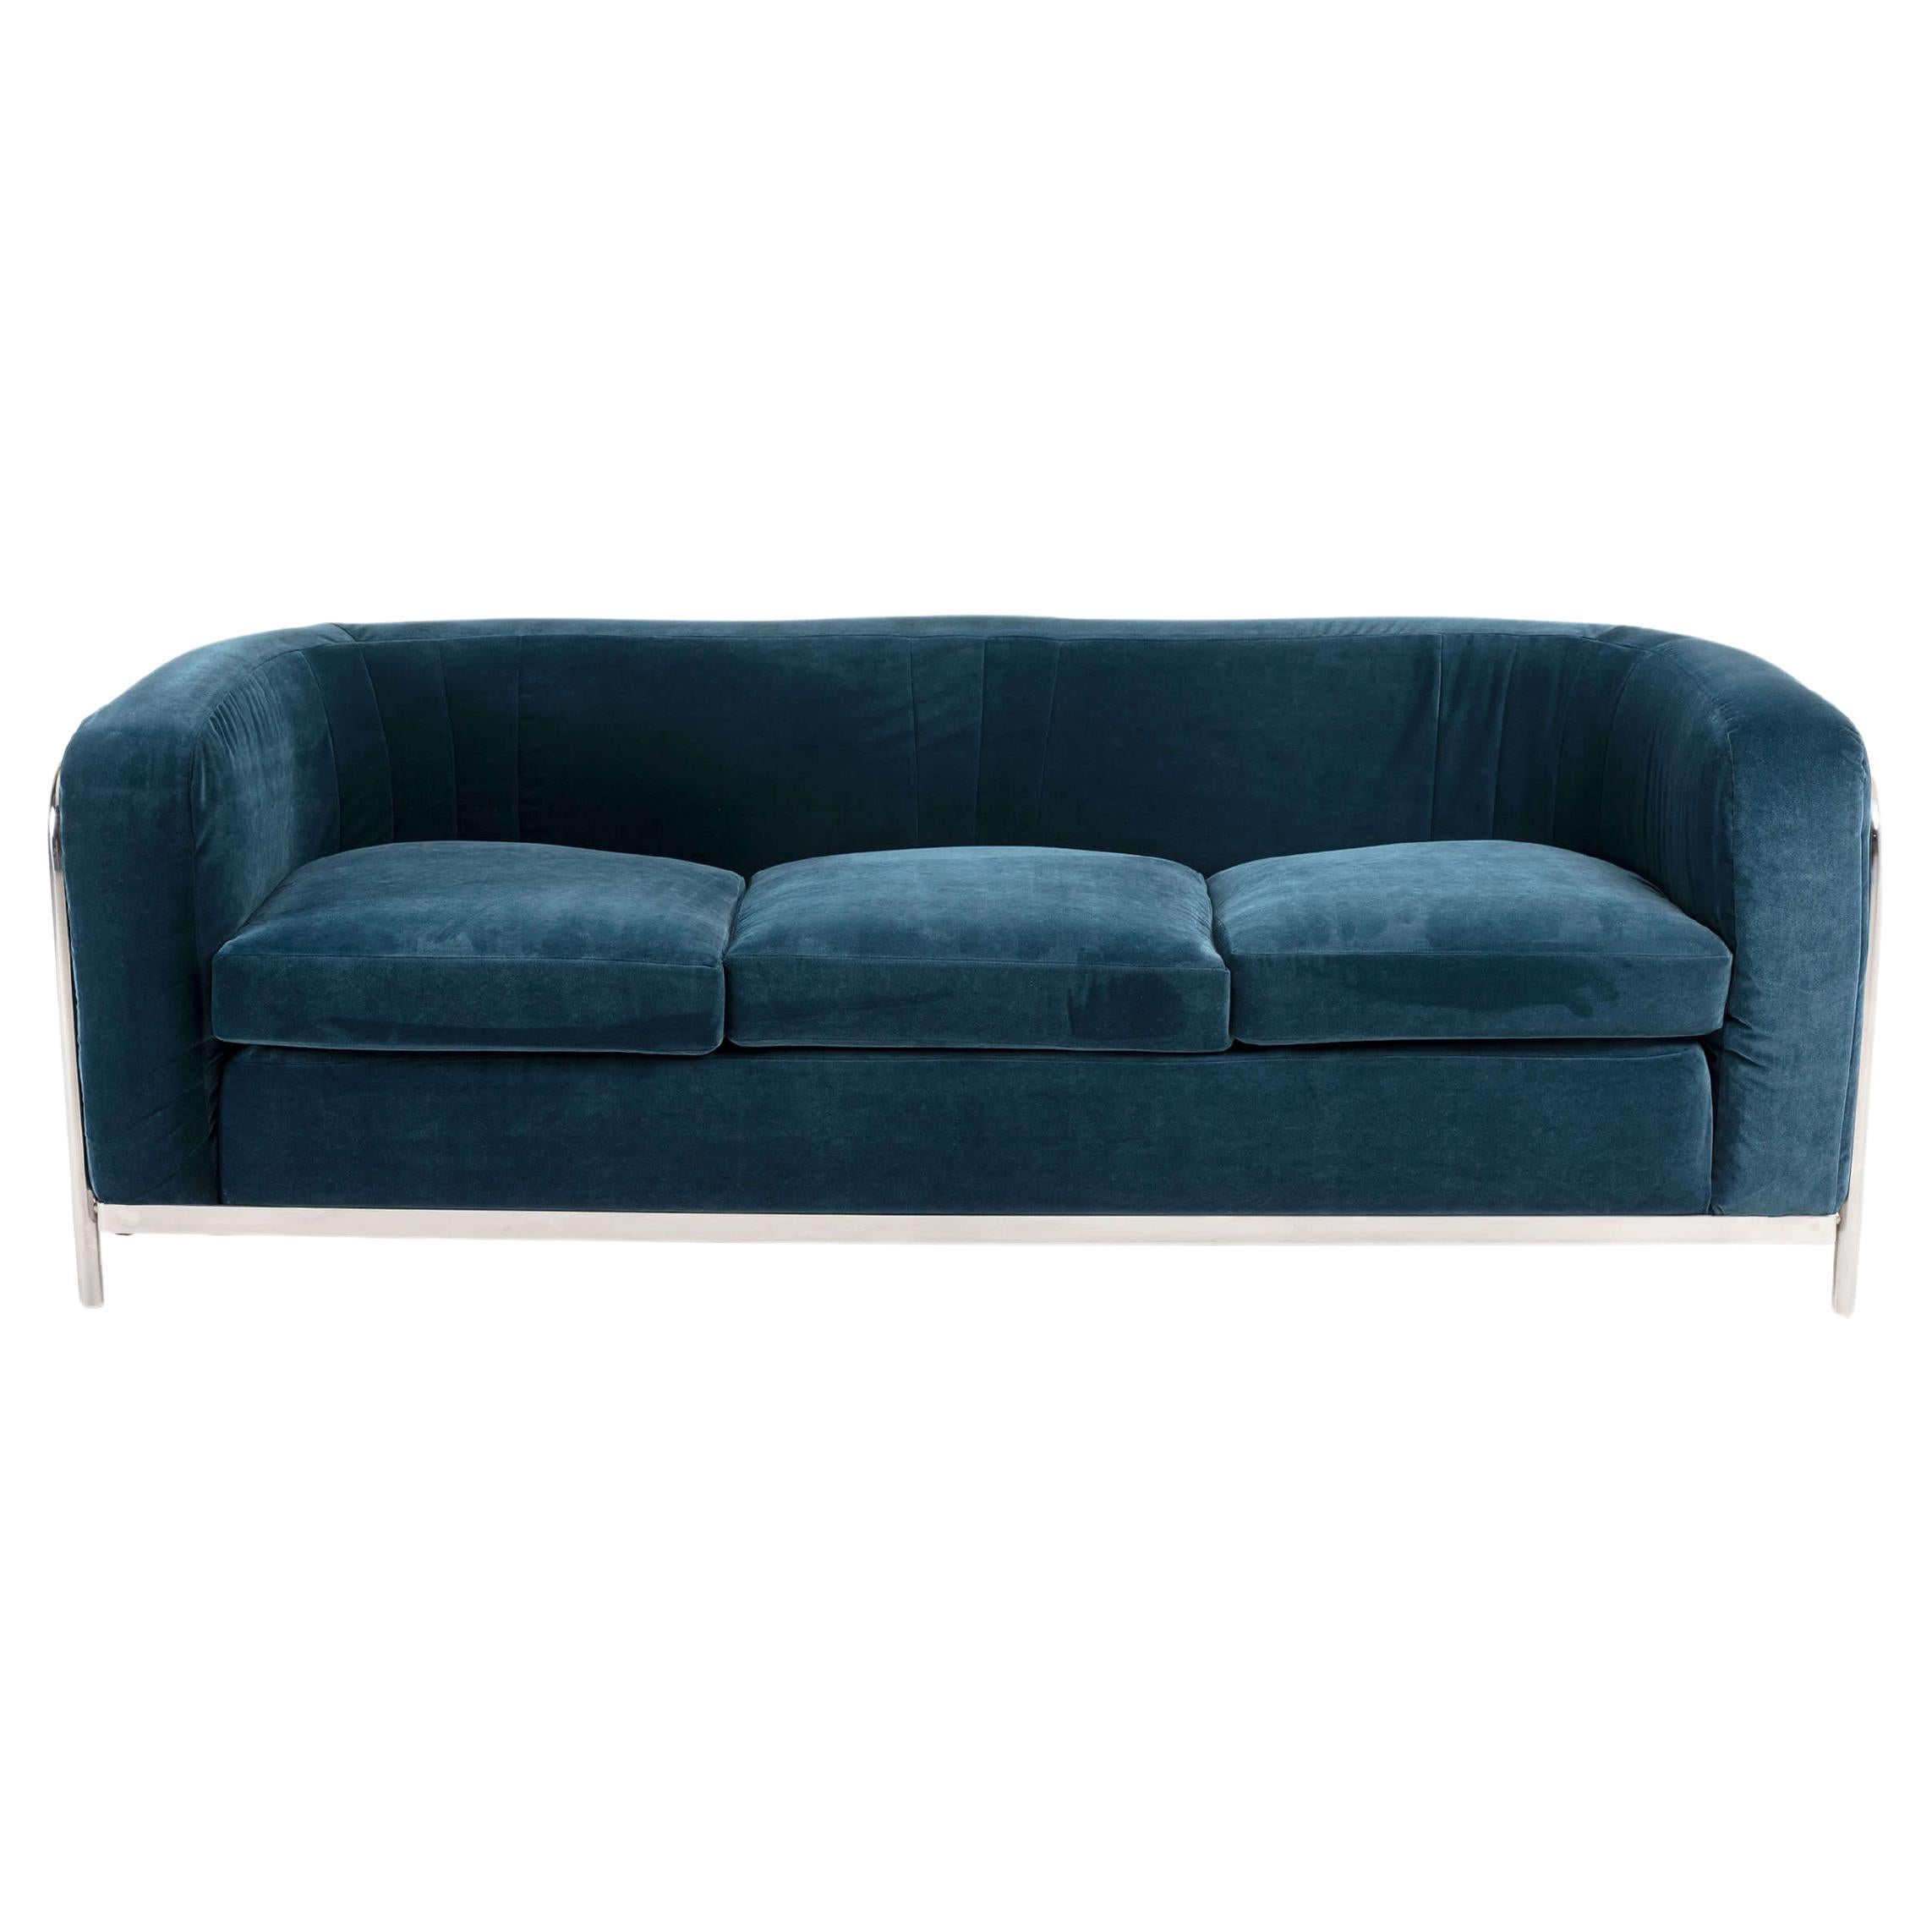 Onda 3-Seater Sofa for Zanotta, Chrome Steel Frame, Teal Velvet Upholster, 1970s For Sale